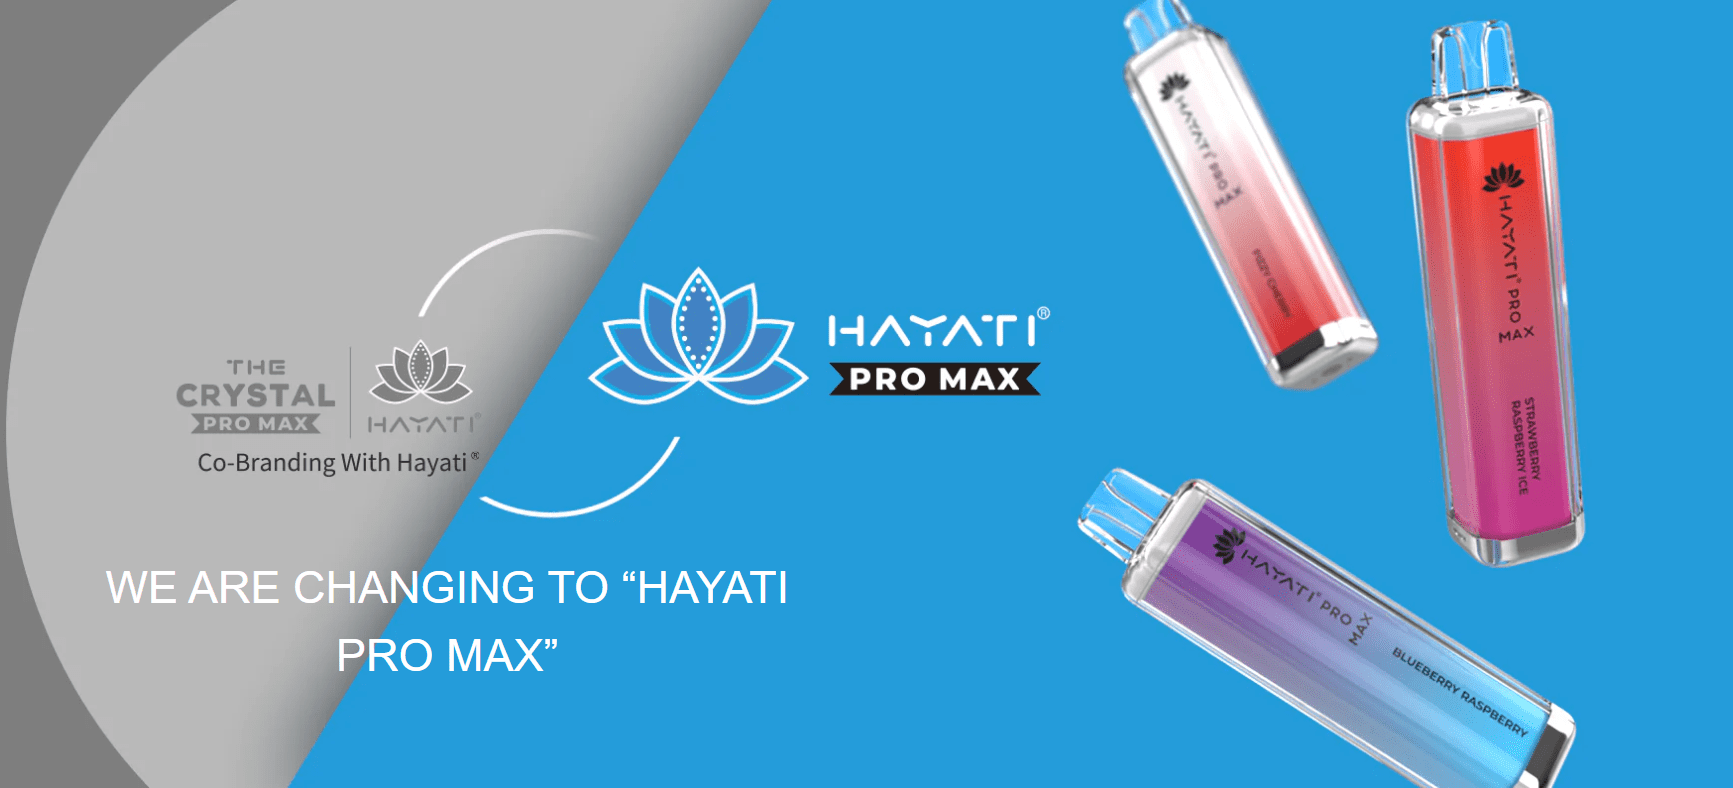 Crystal Pro Max Hayati